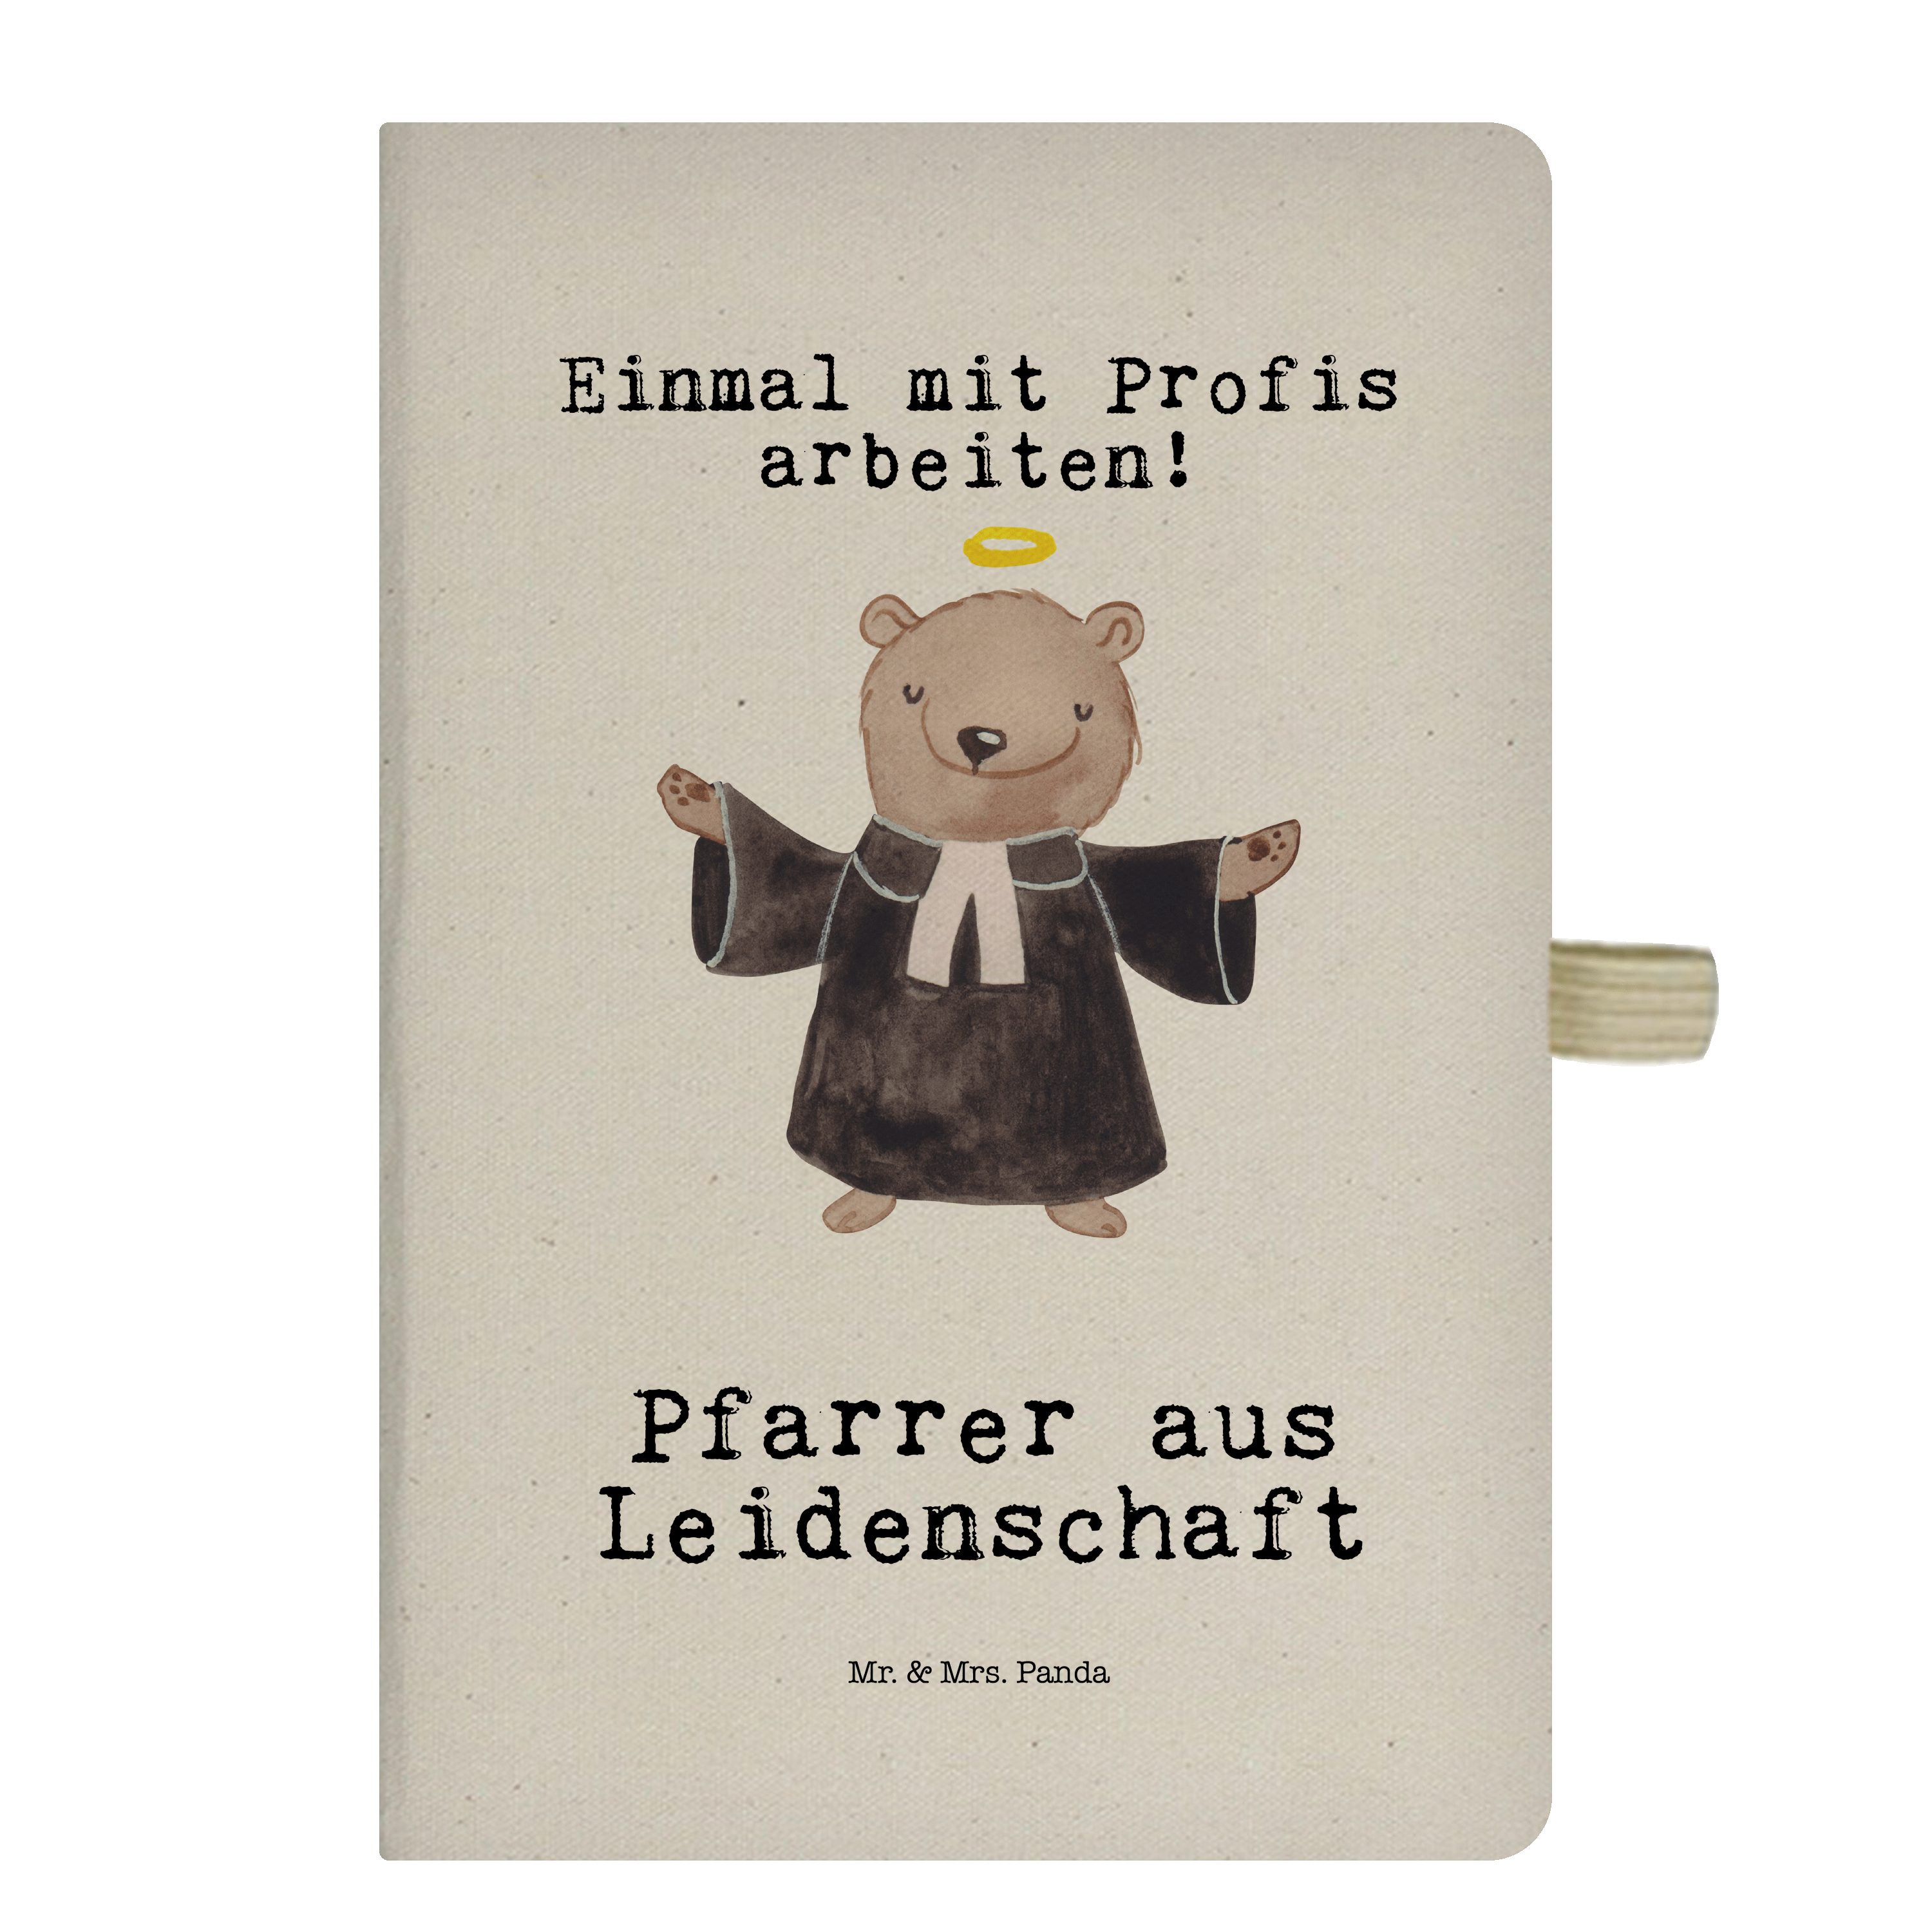 Mr. & Mrs. Panda Notizbuch Pfarrer aus Leidenschaft - Transparent - Geschenk, Kirche, Prediger P Mr. & Mrs. Panda